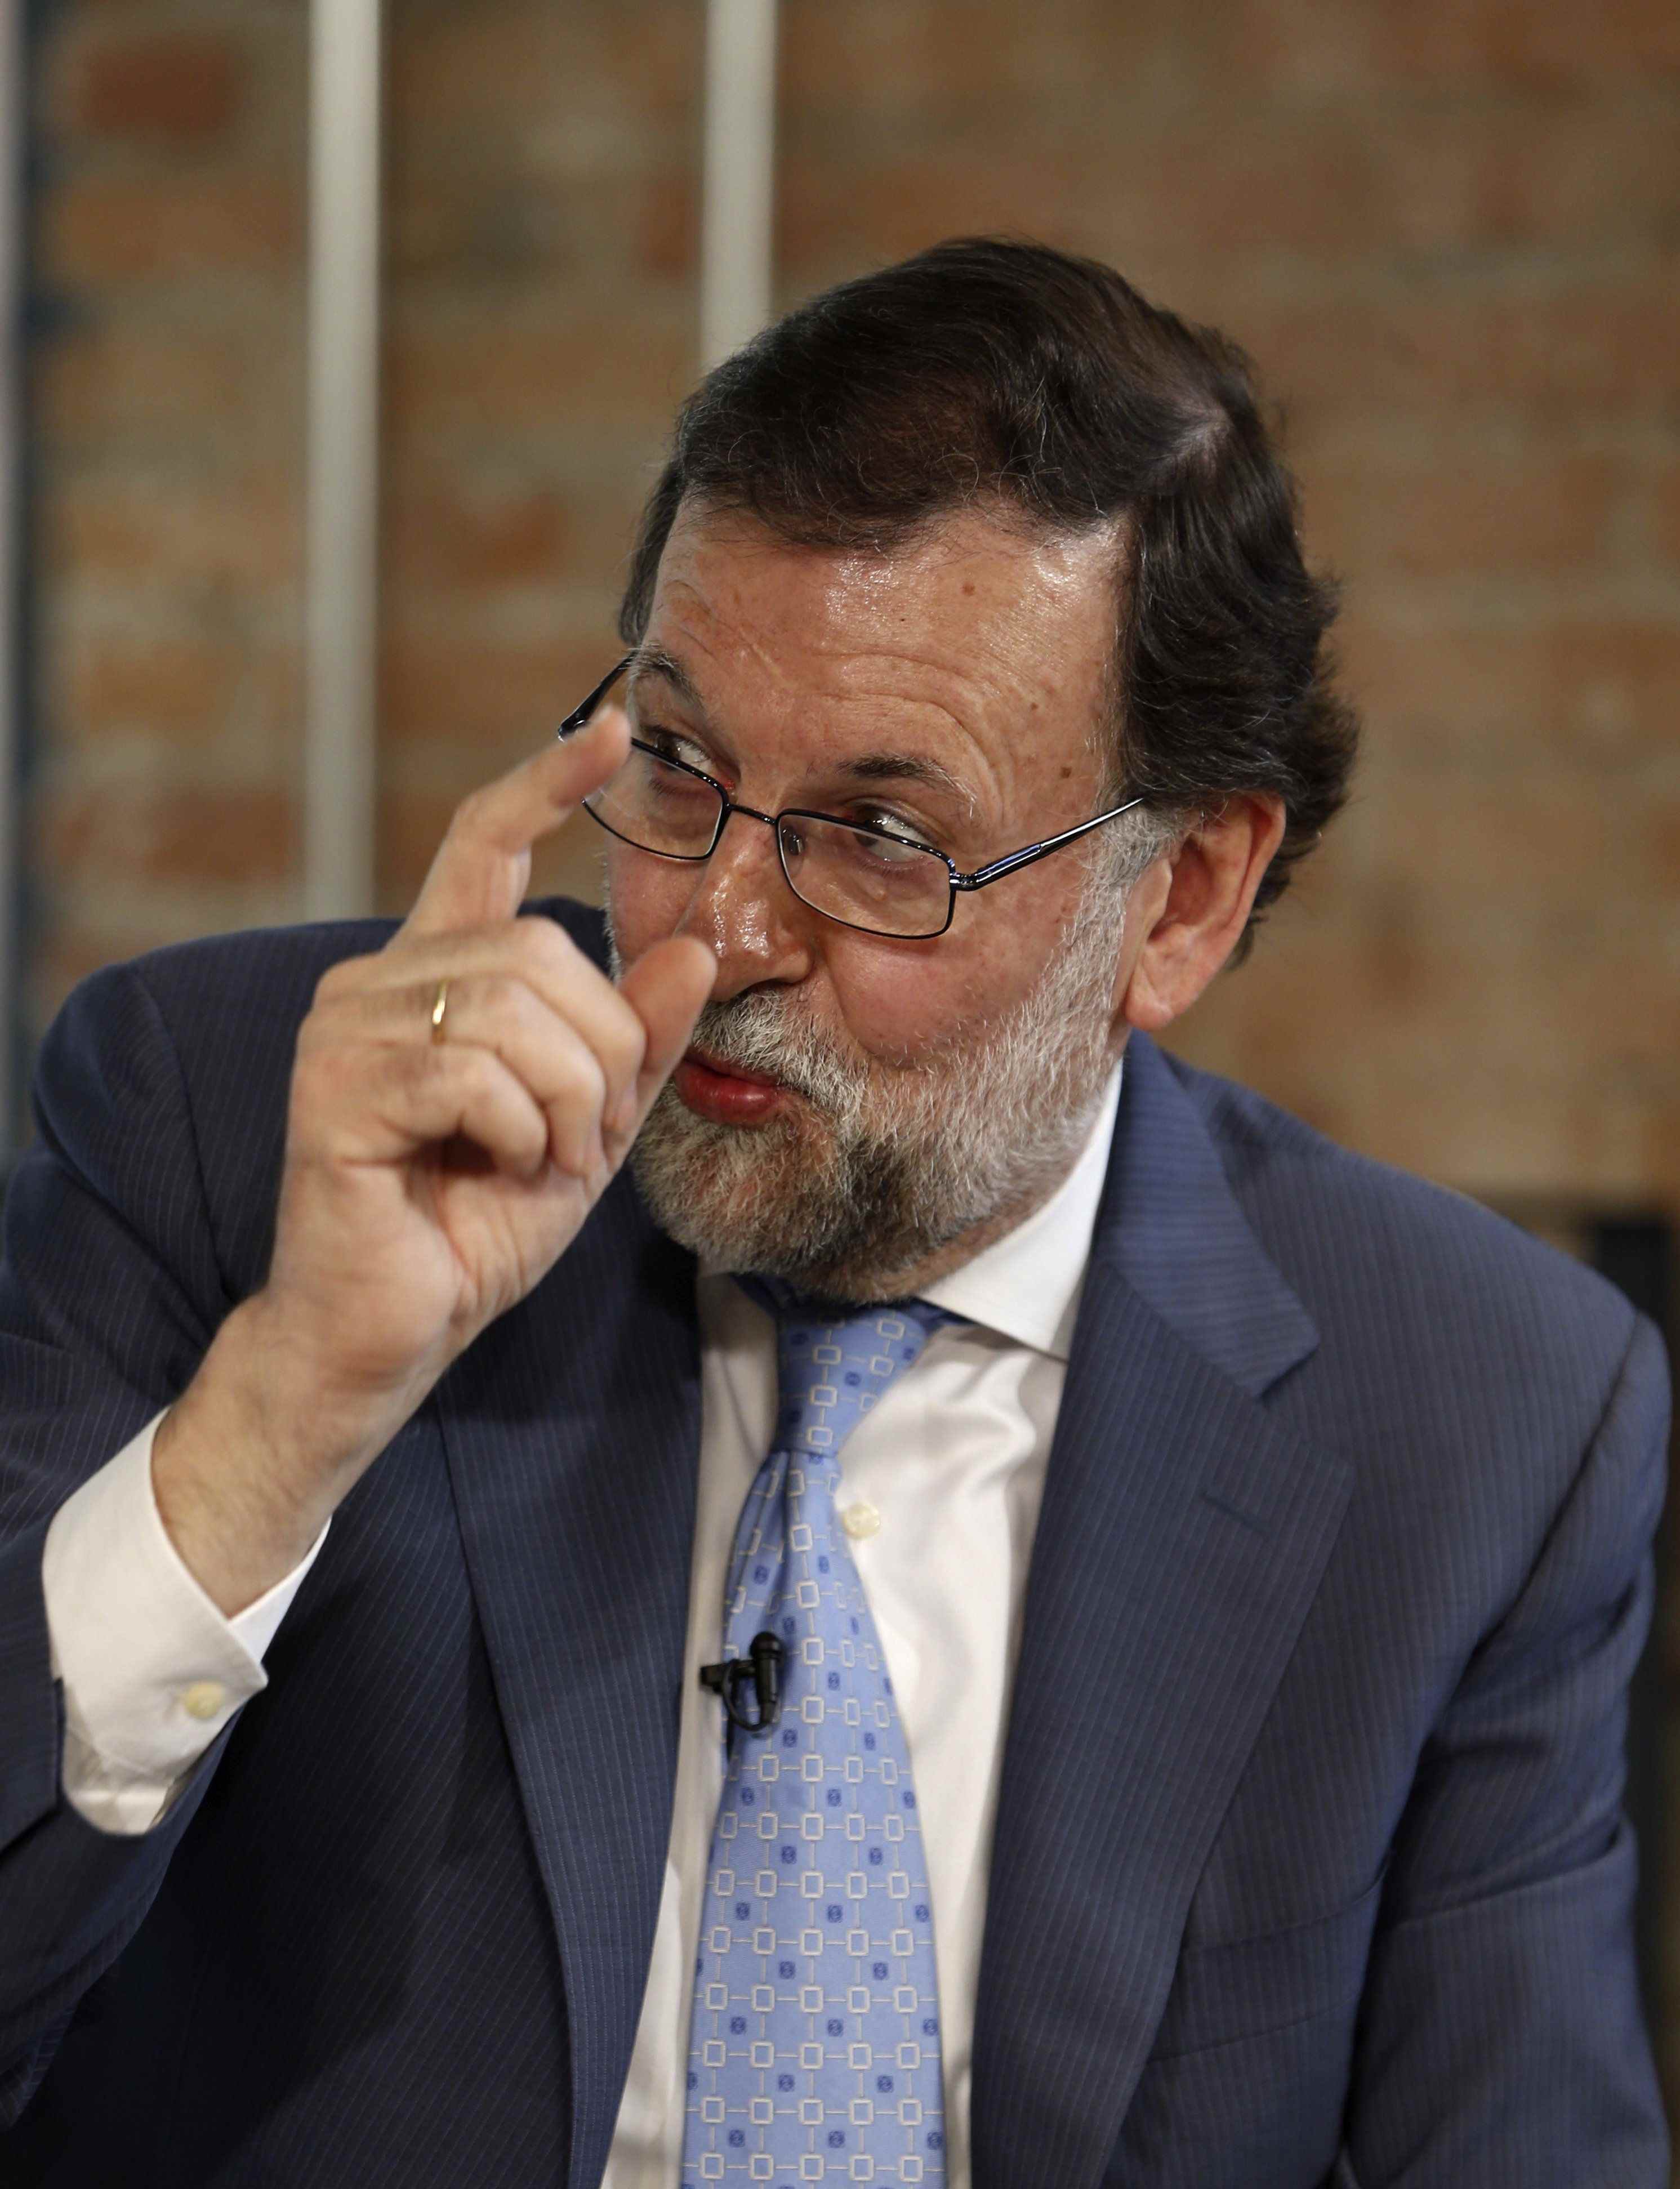 El expresidente de Murcia pide a Rajoy que dé "un paso atrás"